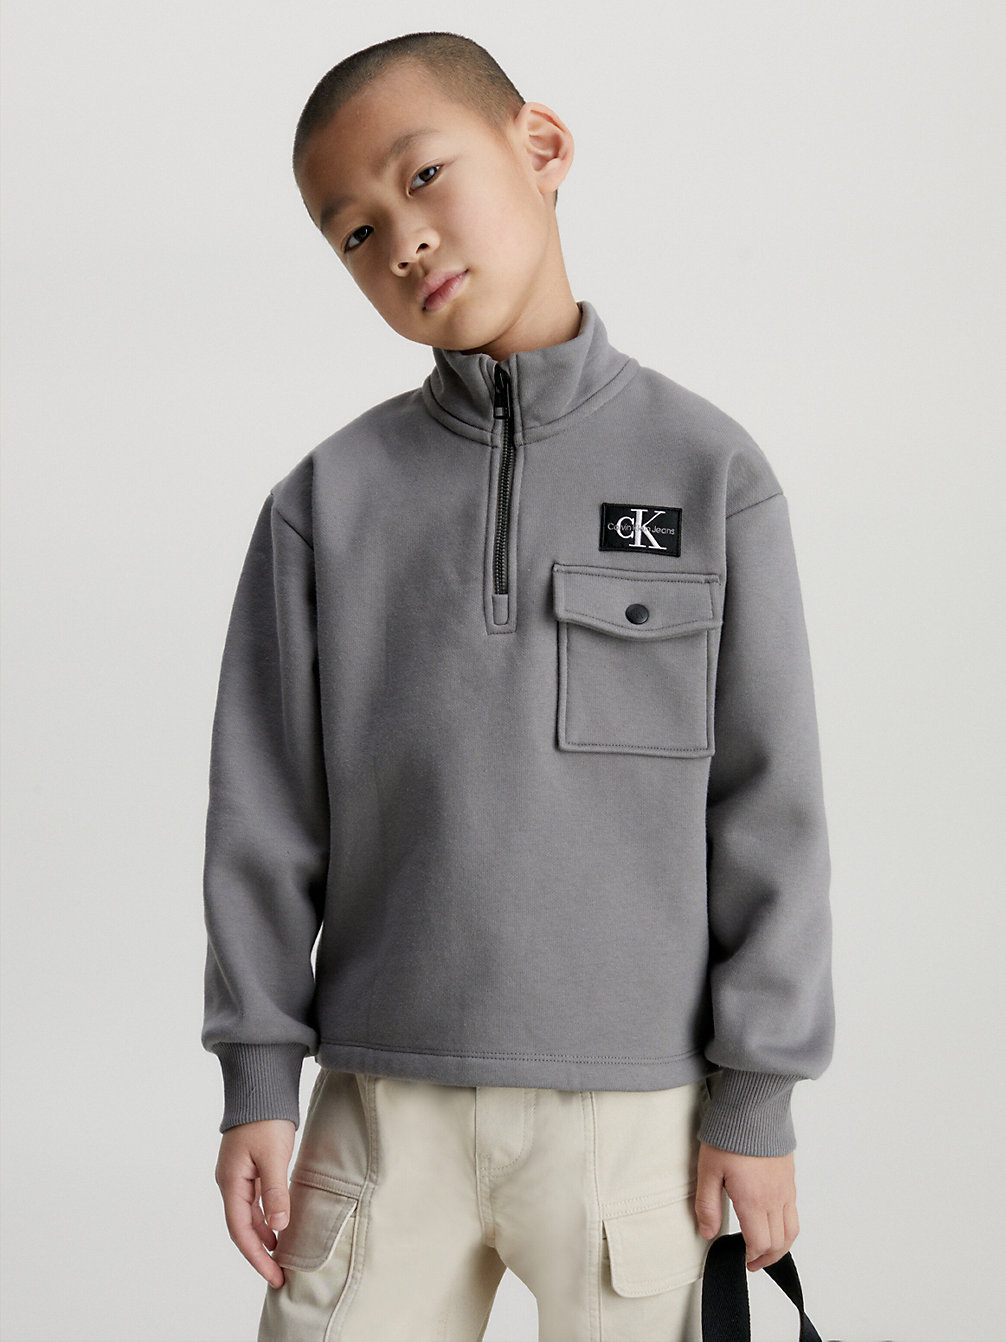 BRUSHED NICKEL Relaxed Half Zip Fleece Sweatshirt undefined boys Calvin Klein